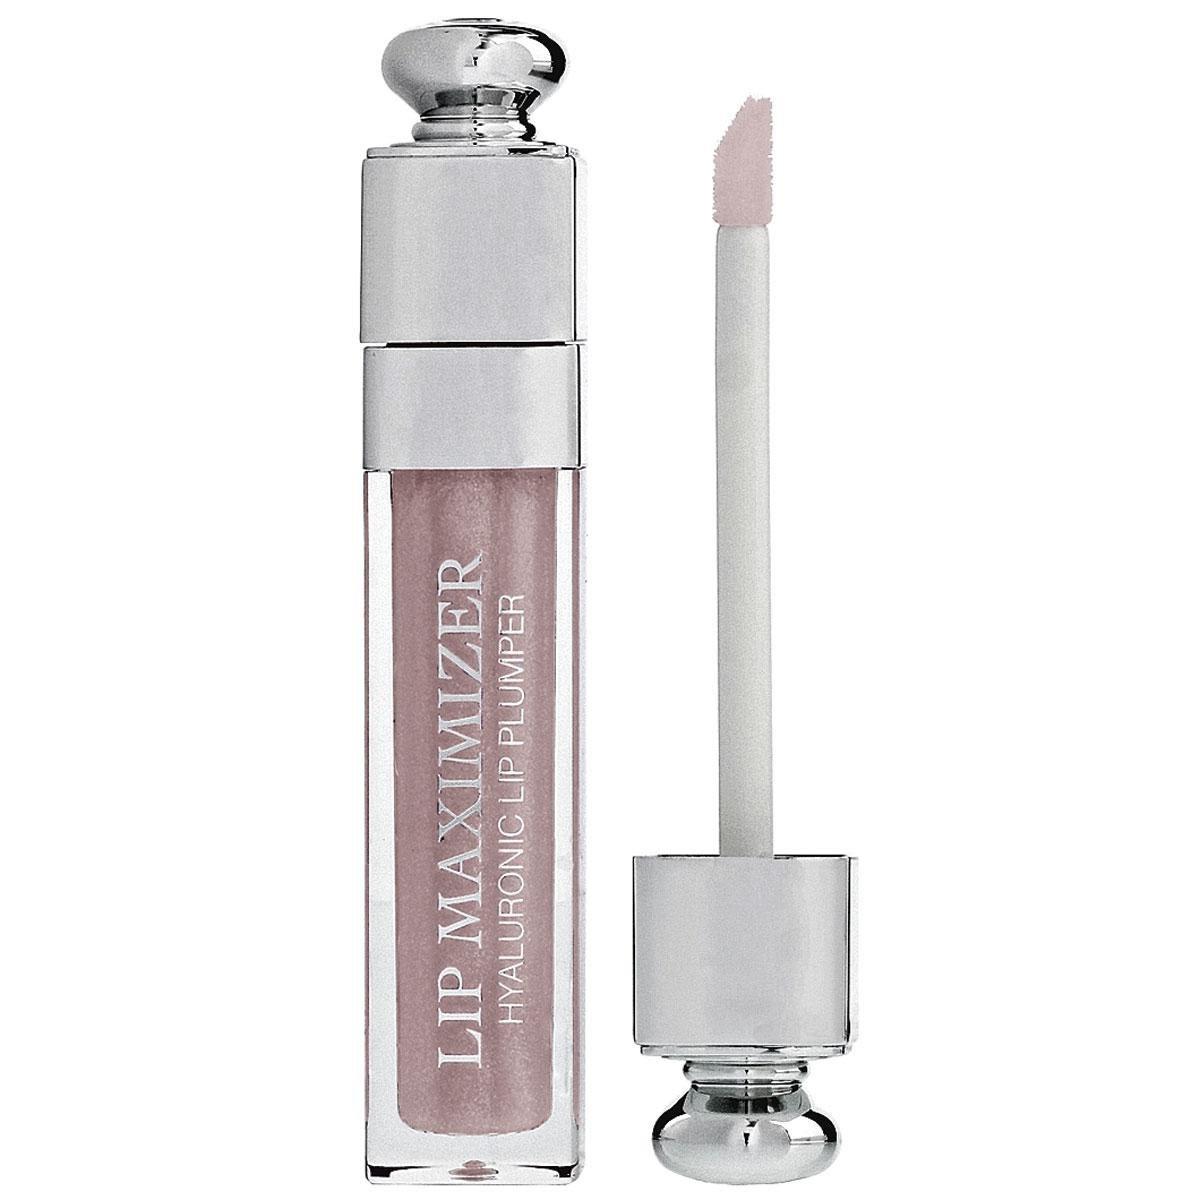 L'épiderme très fin  des lèvres est vulnérable aux changements de saison! Lip Maximizer de Dior apporte 24 h d'hydratation (39,91 ?), en parfumerie.